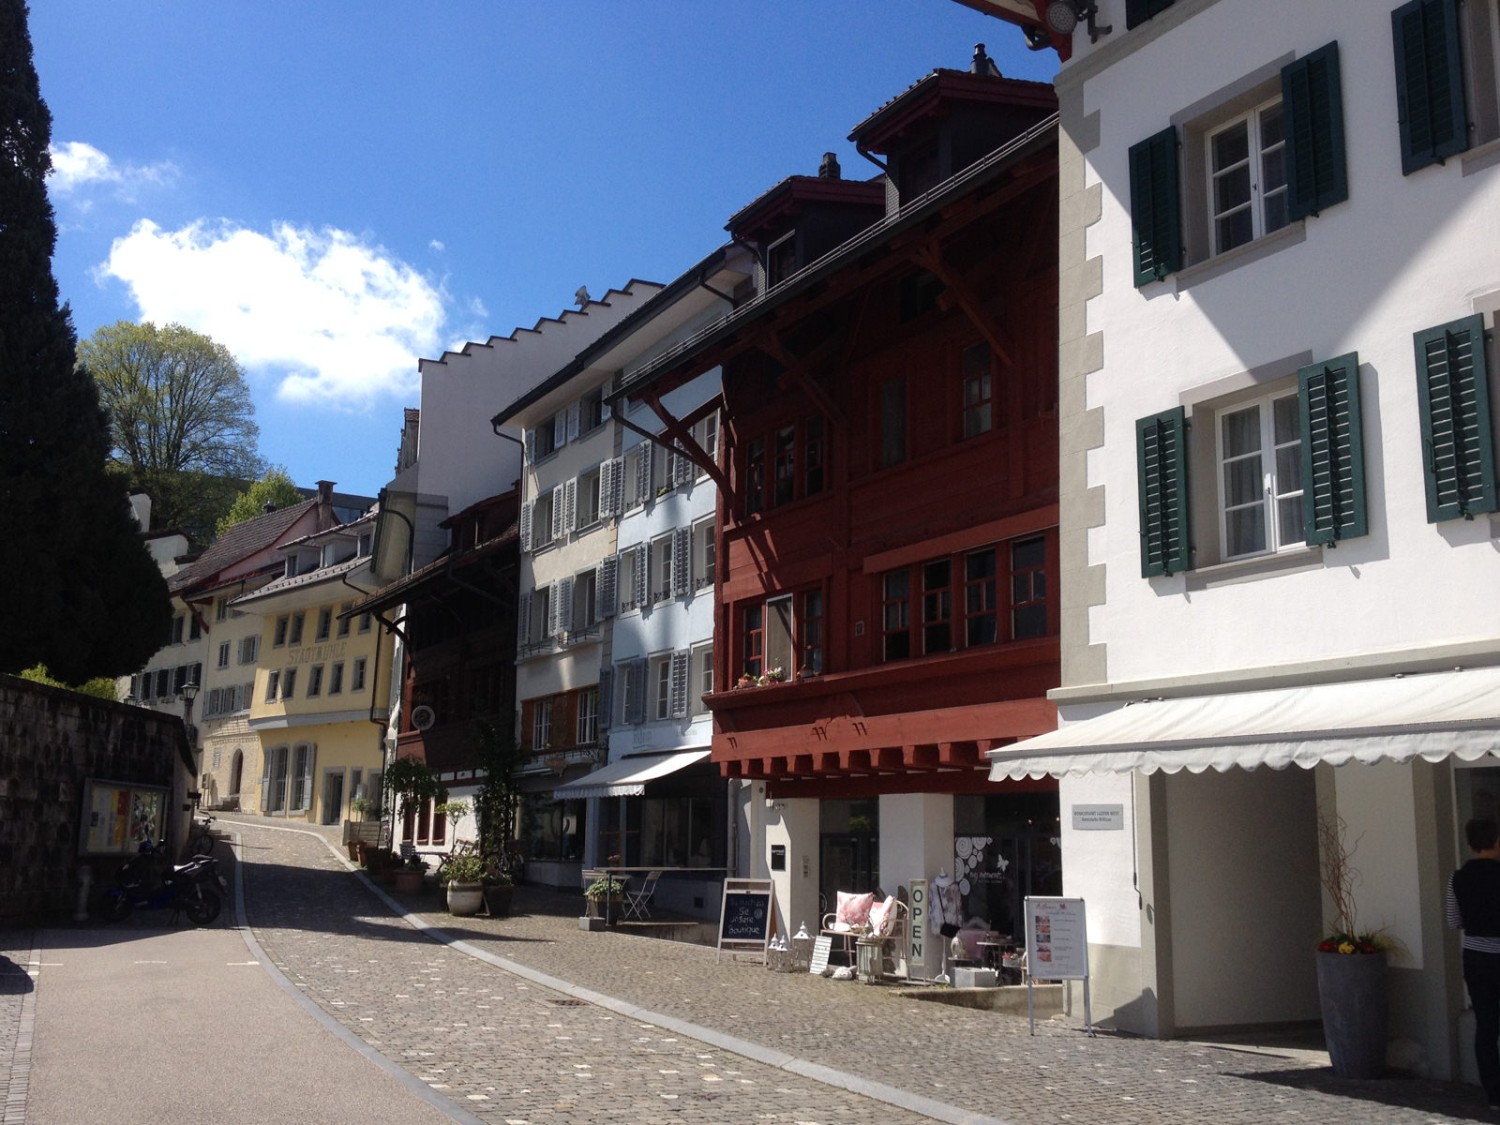 Der Weg führt durch die historische Altstadt von Willisau. Bild: Claudia Peter